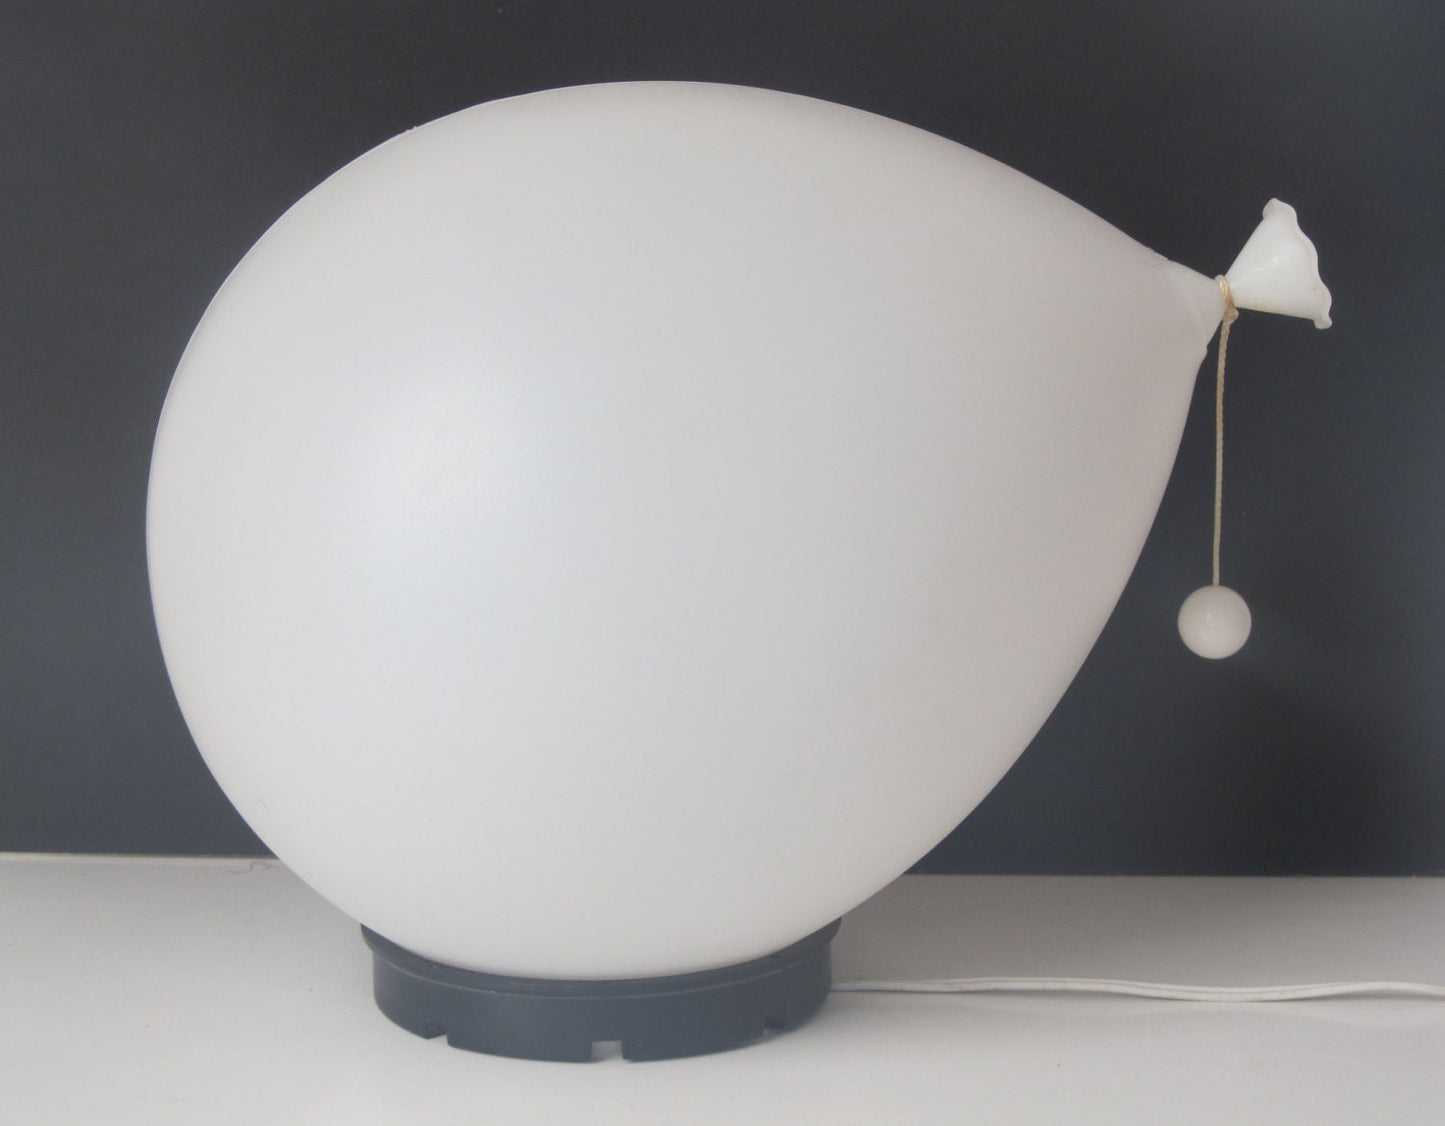 Ballonlamp ontworpen door Yves Christin voor Bilumen tafel- of wand-/plafondlamp, Italië 1975 diffusor van geblazen kunststof en zwarte ABS voet